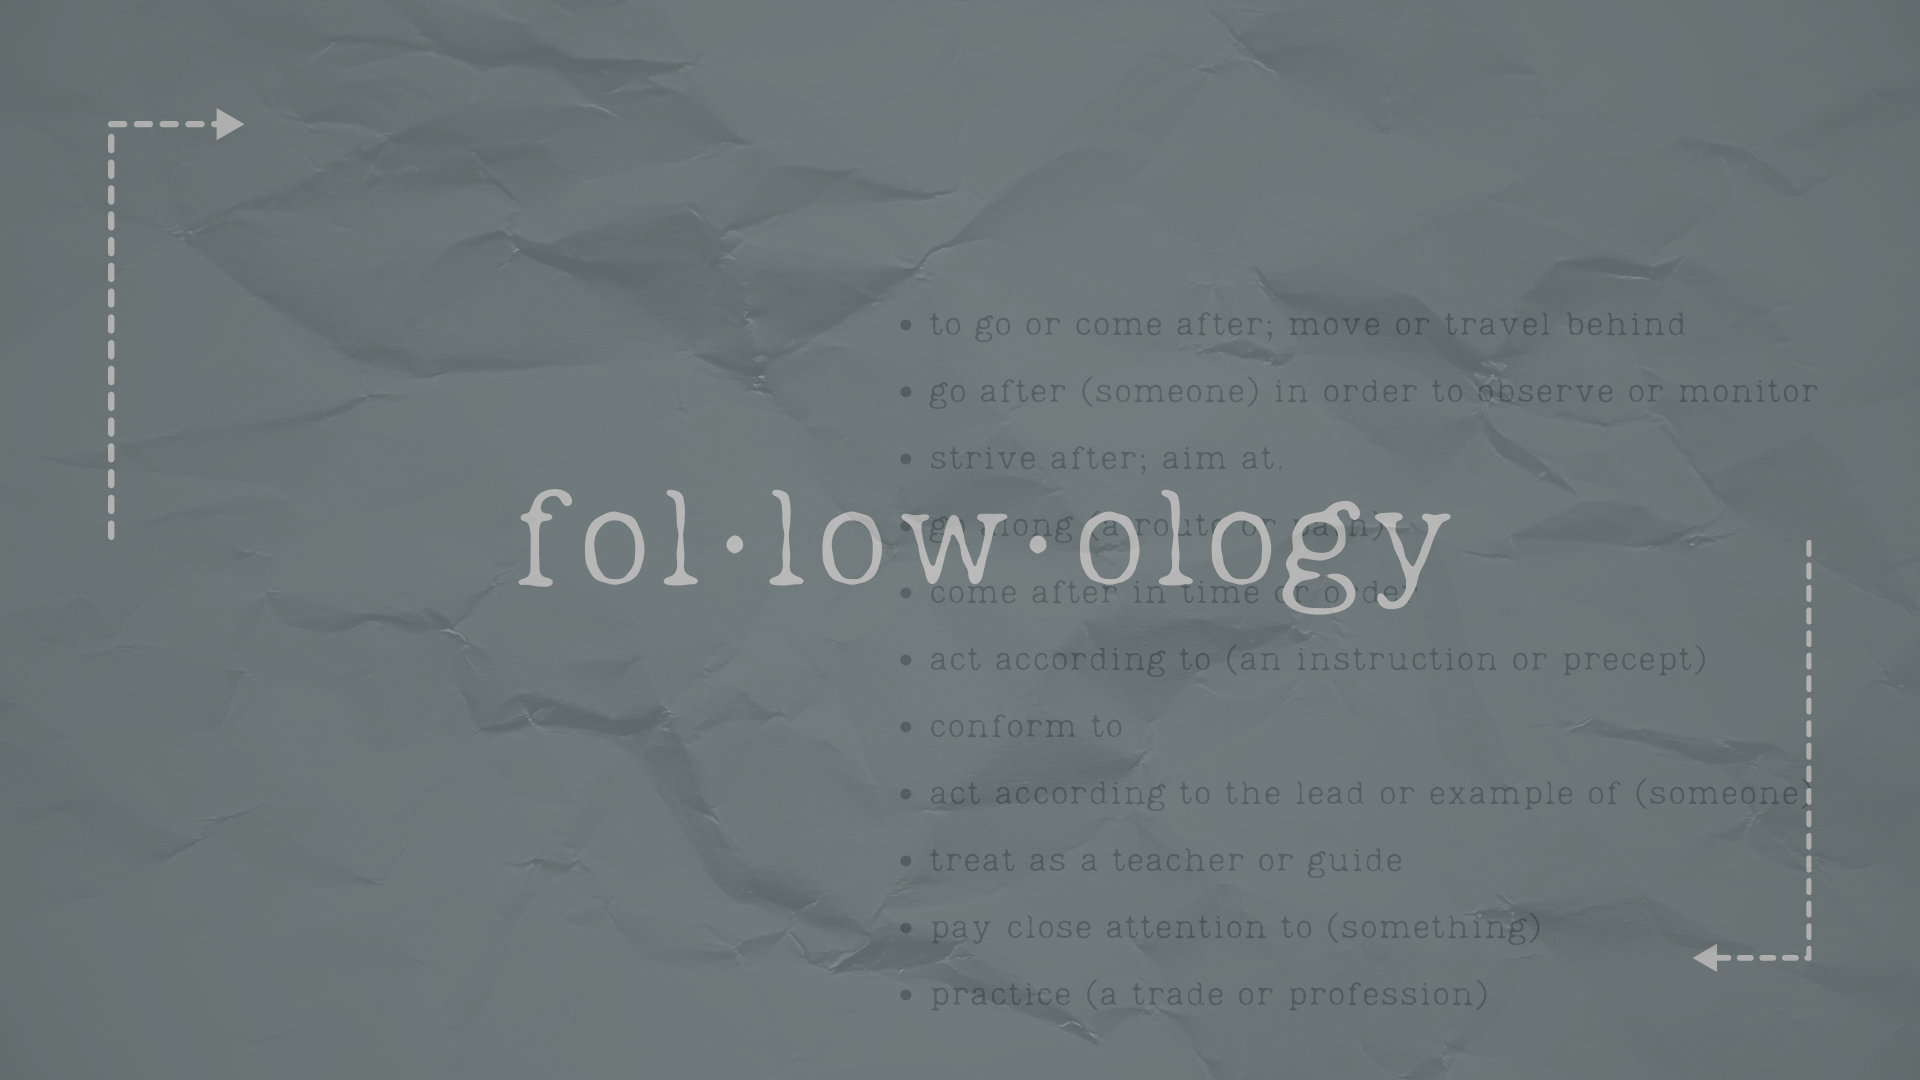 Followology: Move